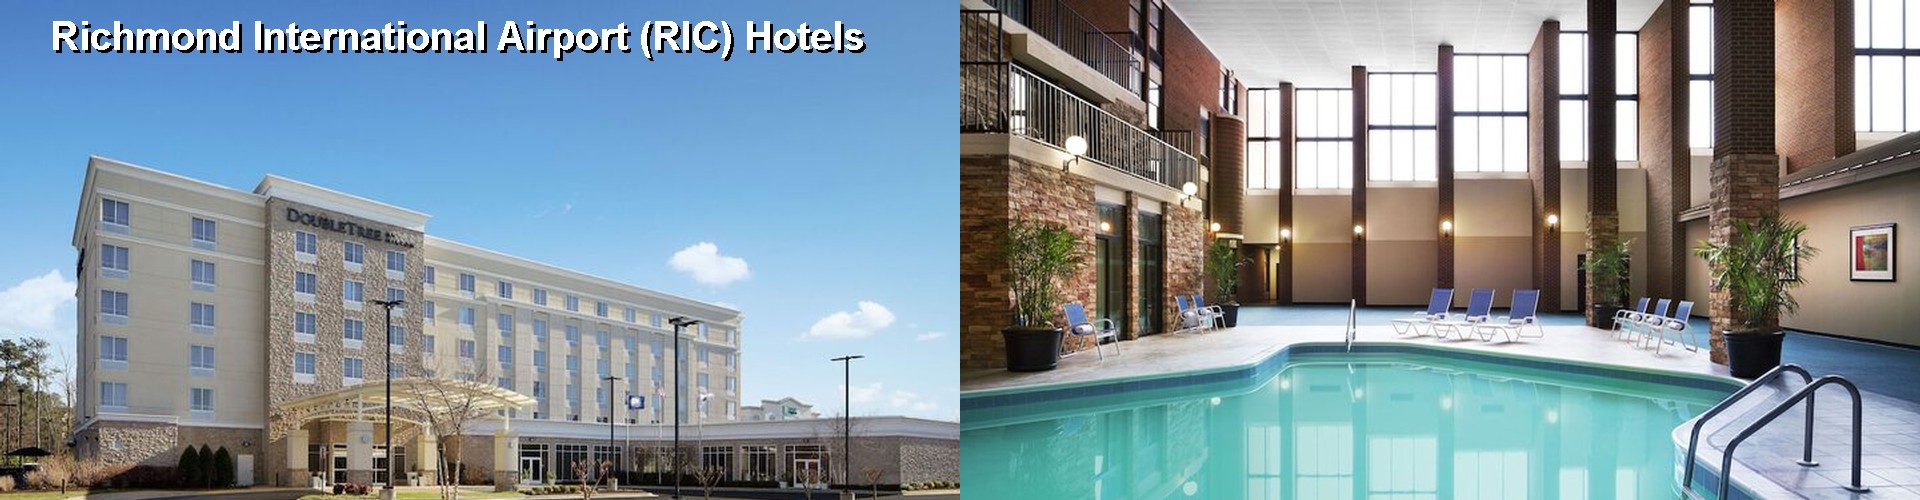 3 Best Hotels near Richmond International Airport (RIC)